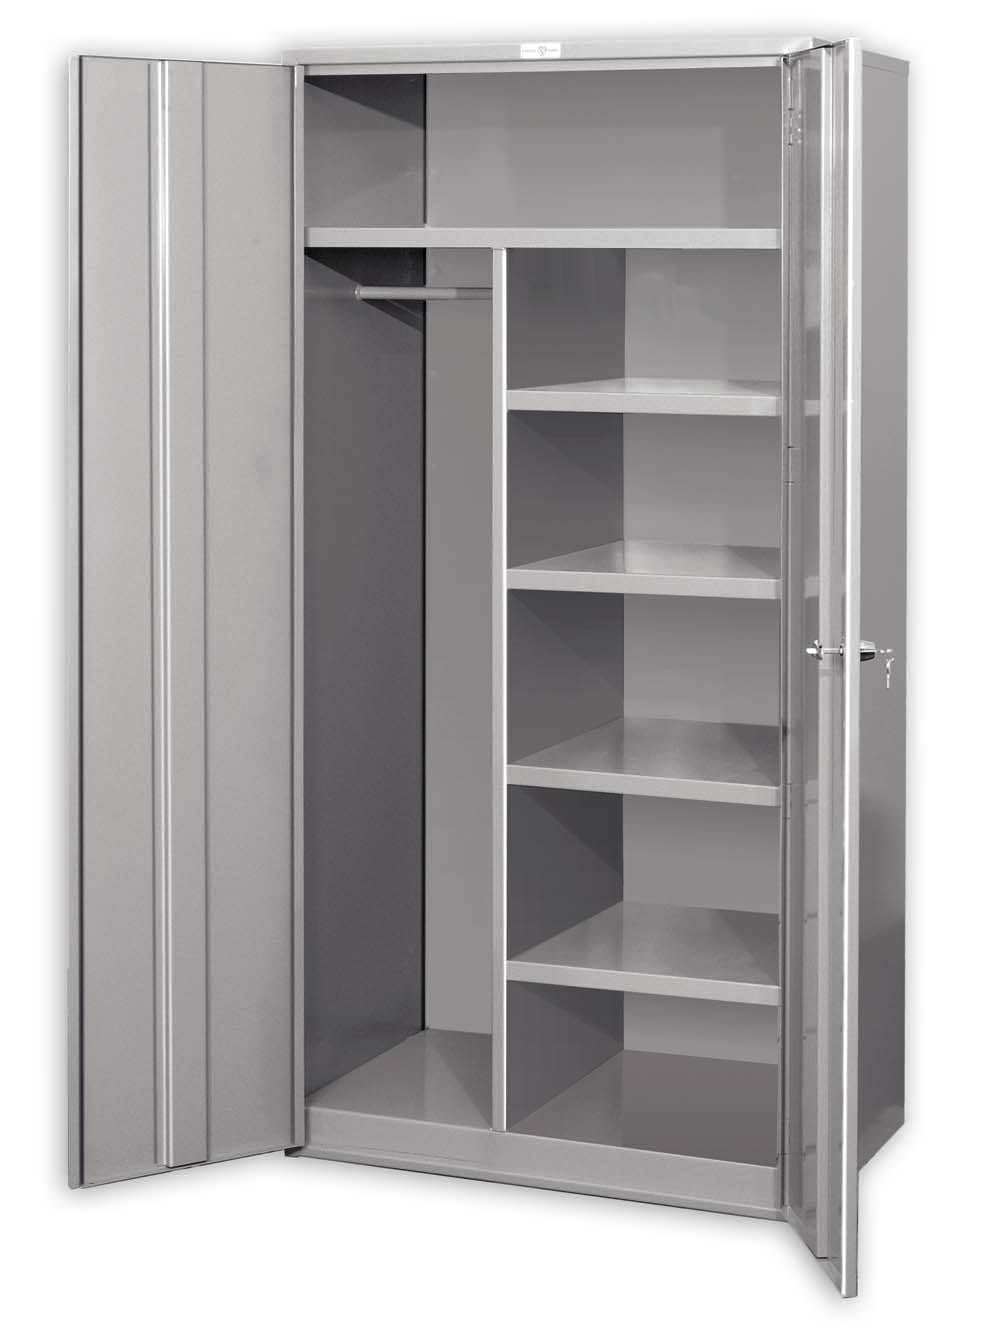 Pucel Wardrobe Storage Cabinet